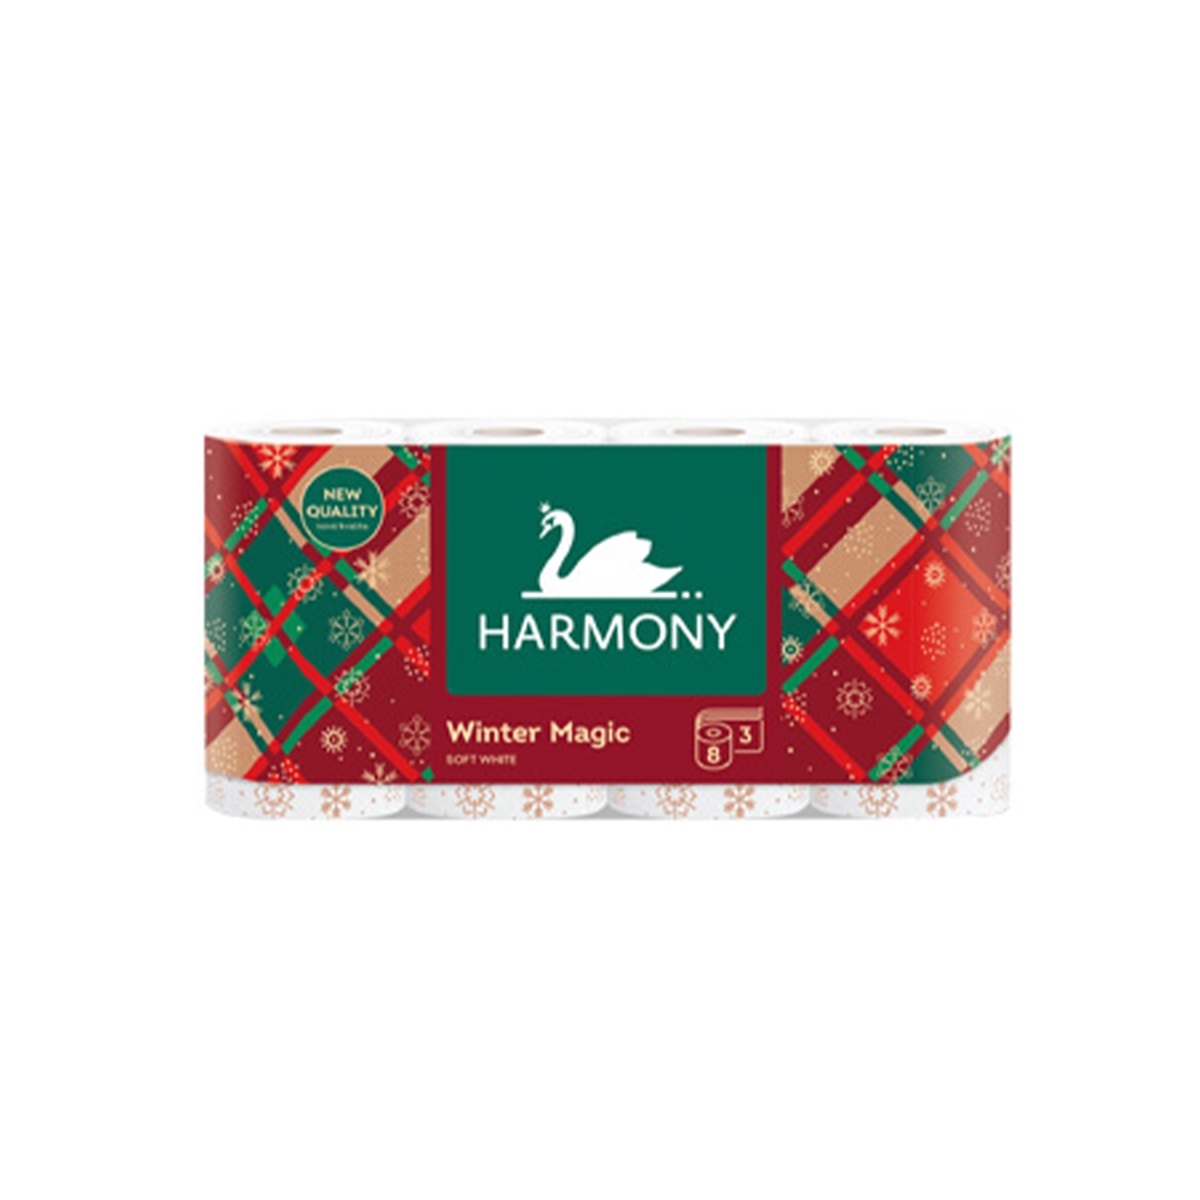 Toaletní papír Harmony Soft 3-vrstvý 8 ks